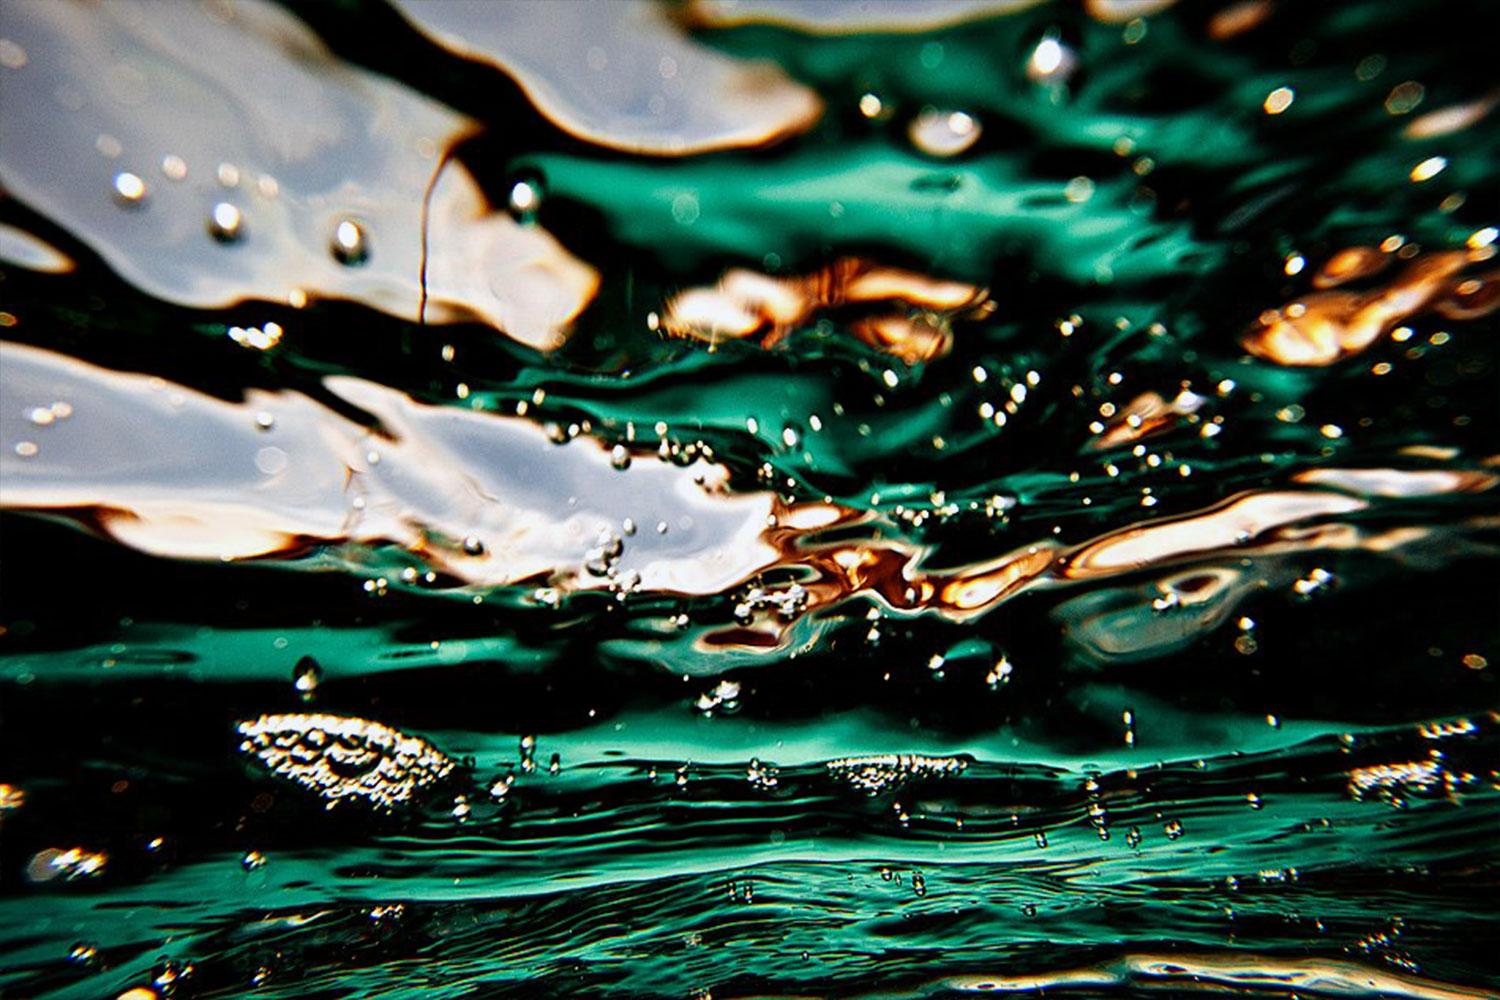 Underwater 1 - Photograph by Sergio Ranalli